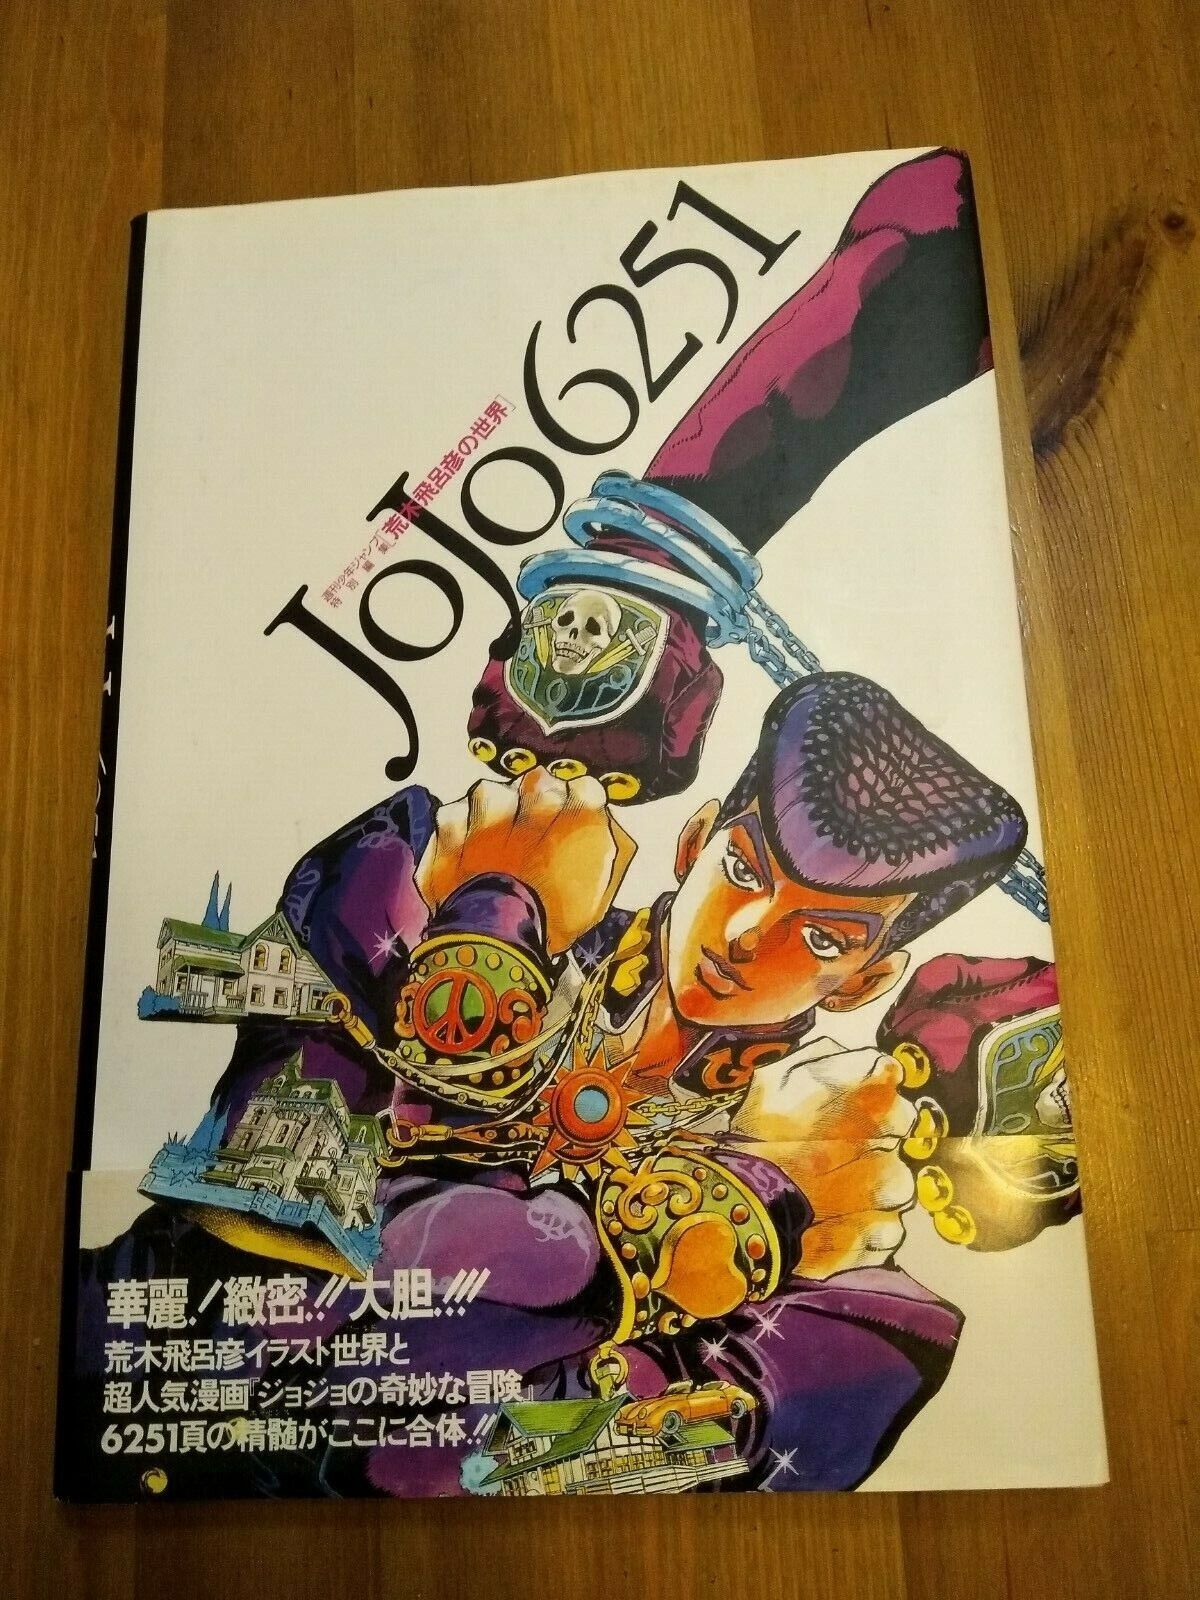 JOJO 6251 Araki Hirohiko of the world (Aizo edition Comics) large size book